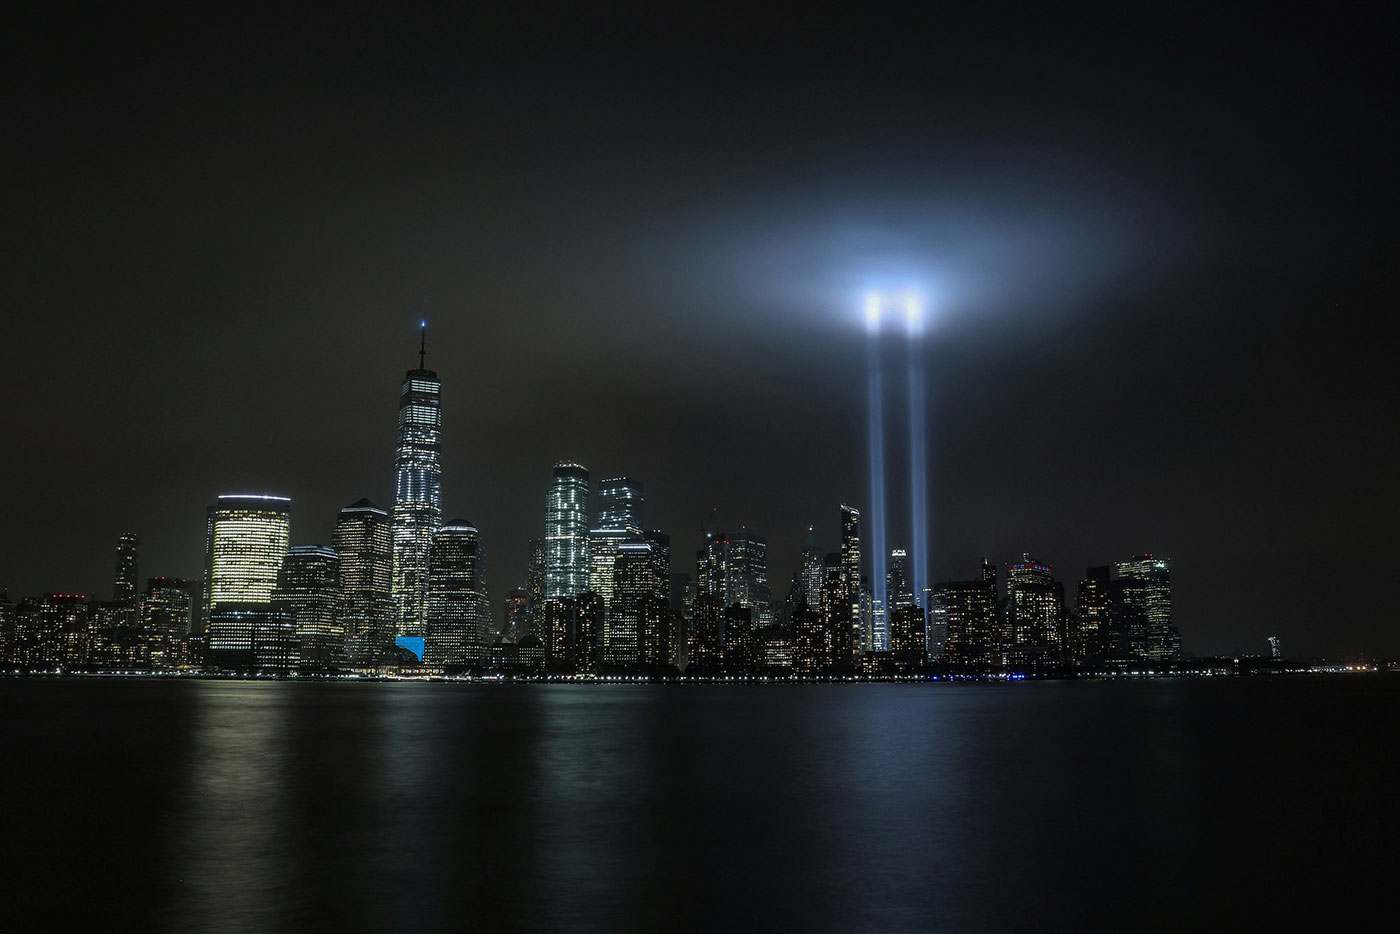 Projeção de luzes no local que ficavam as torres gêmeas em NY antes do atentado de 11 de setembro